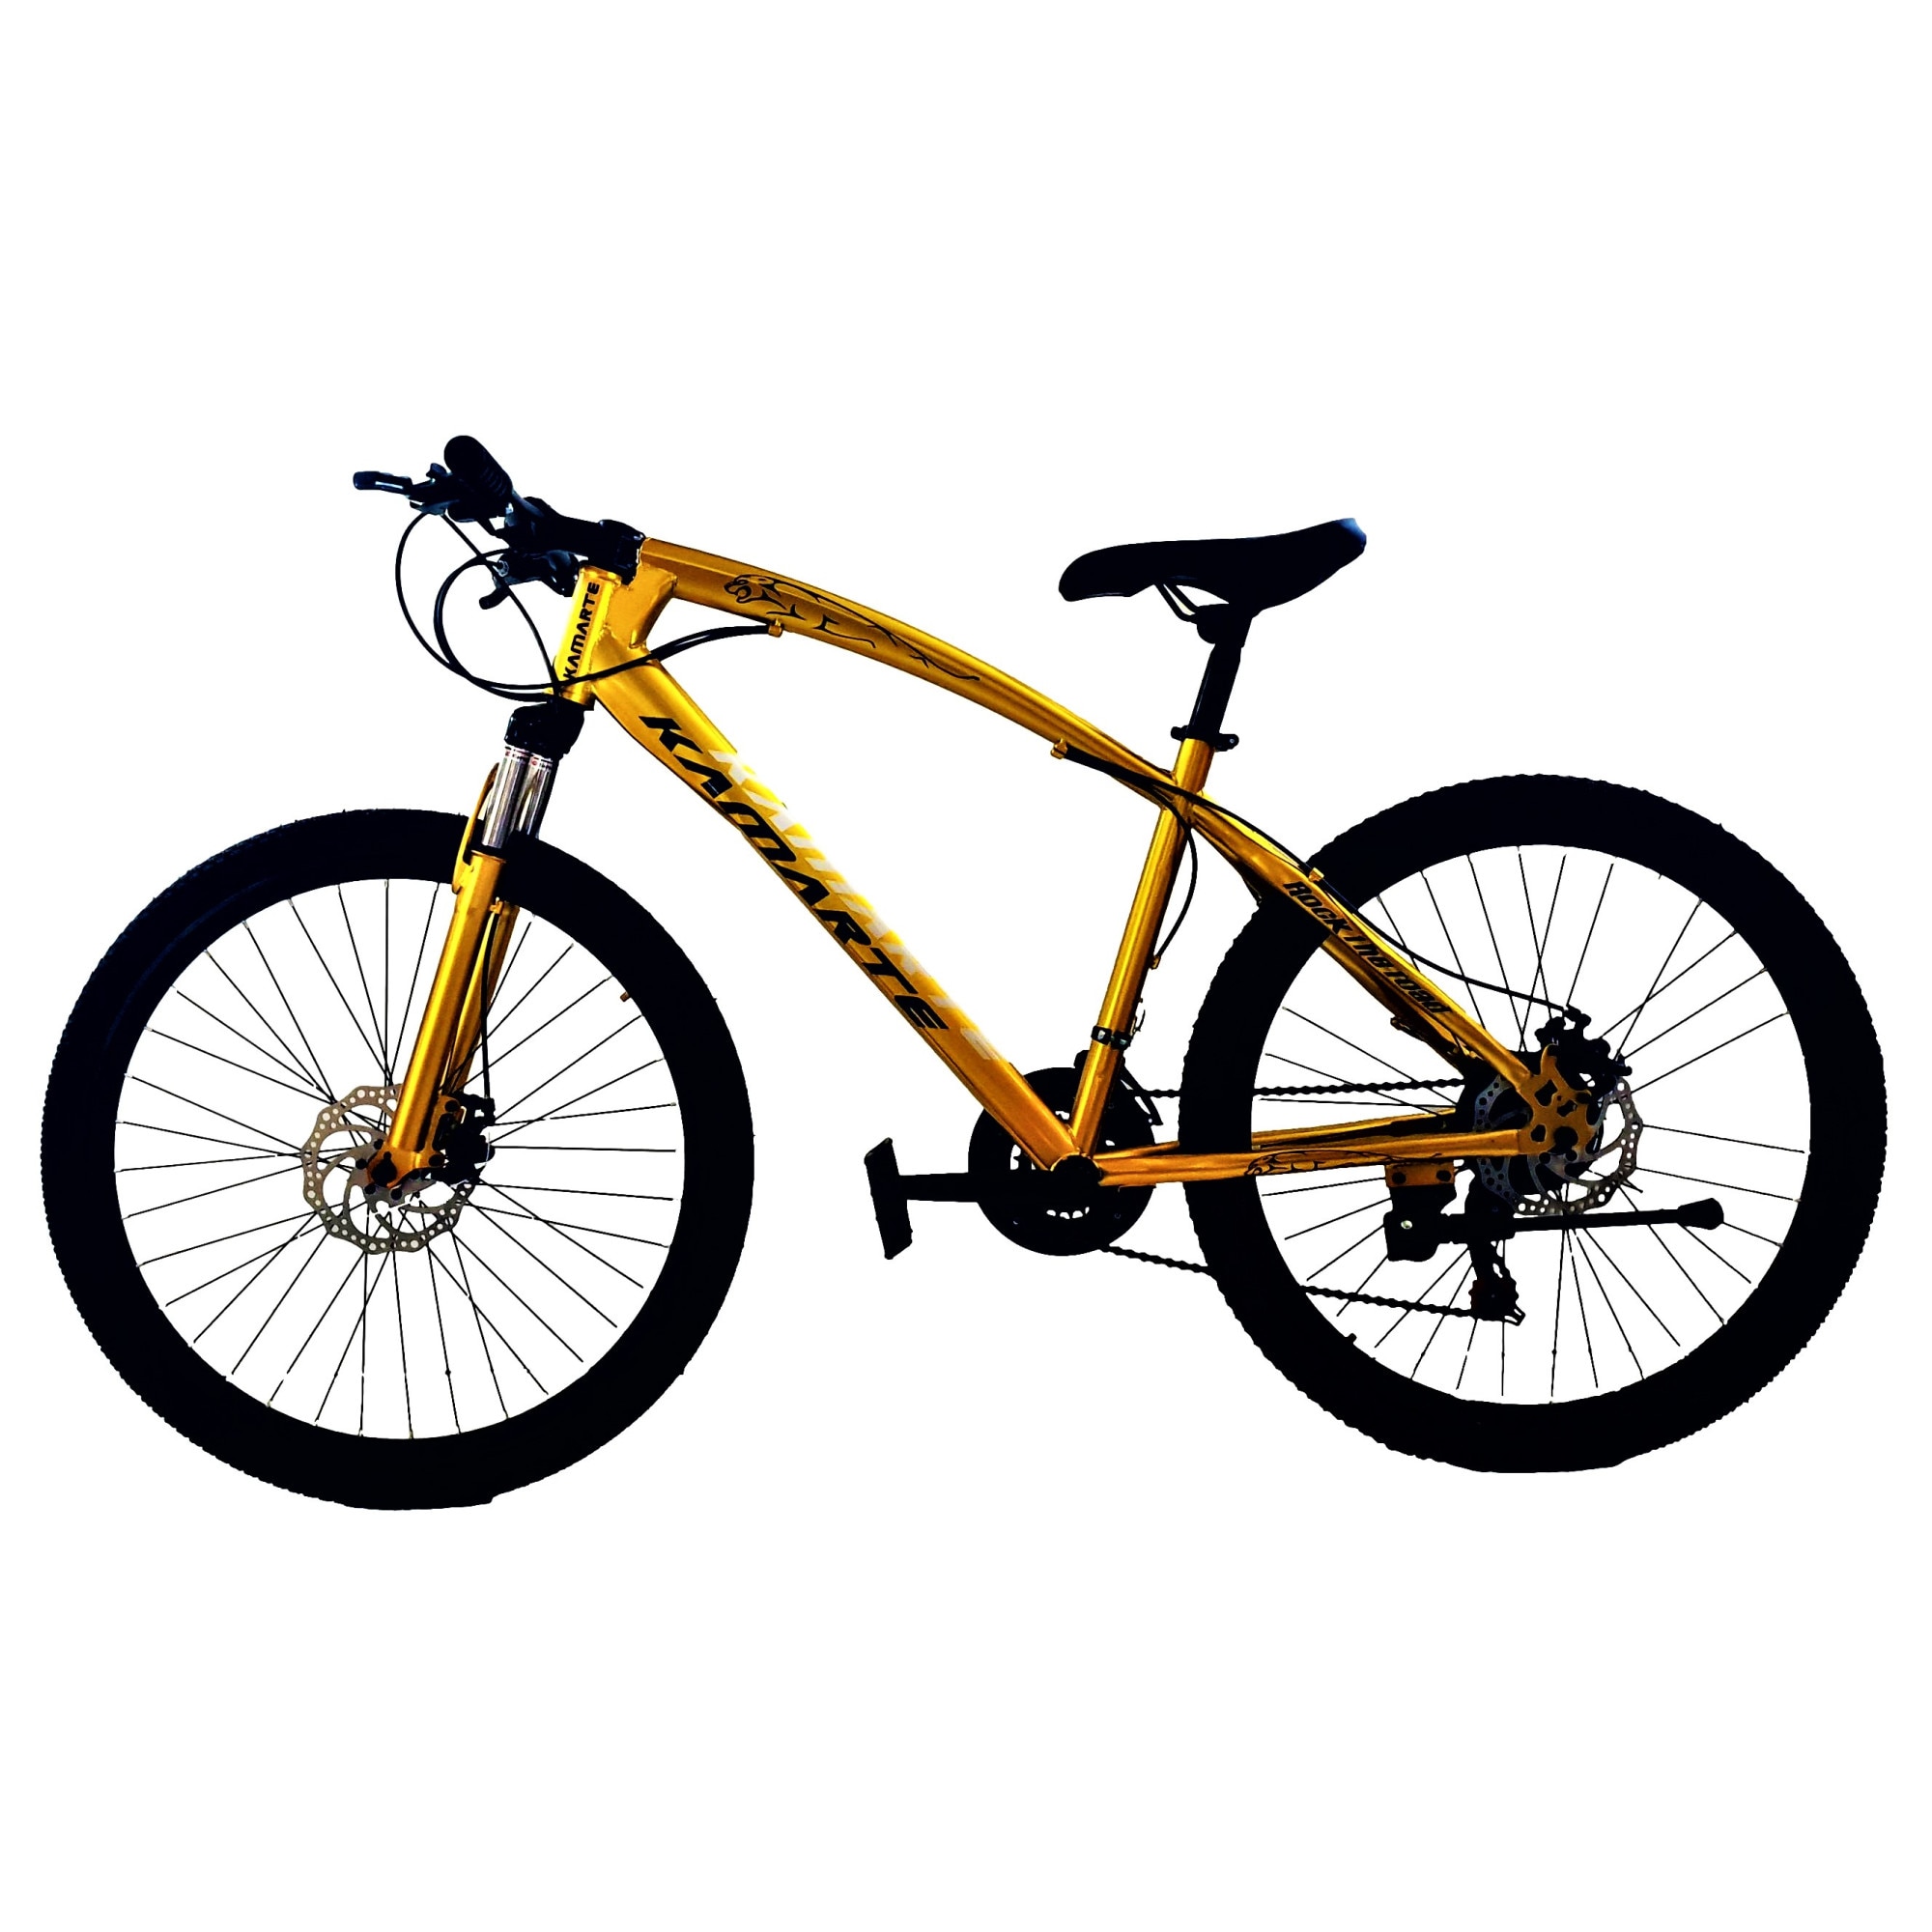 And musics district Bicicleta Mountain Bike – KAIMARTE, AP16, 26 inch, genti aluminiu duble,  cadru otel, frane mecanice pe disc fata/spate, suspensie fata, 21 de  viteze, culoare auriu - eMAG.ro